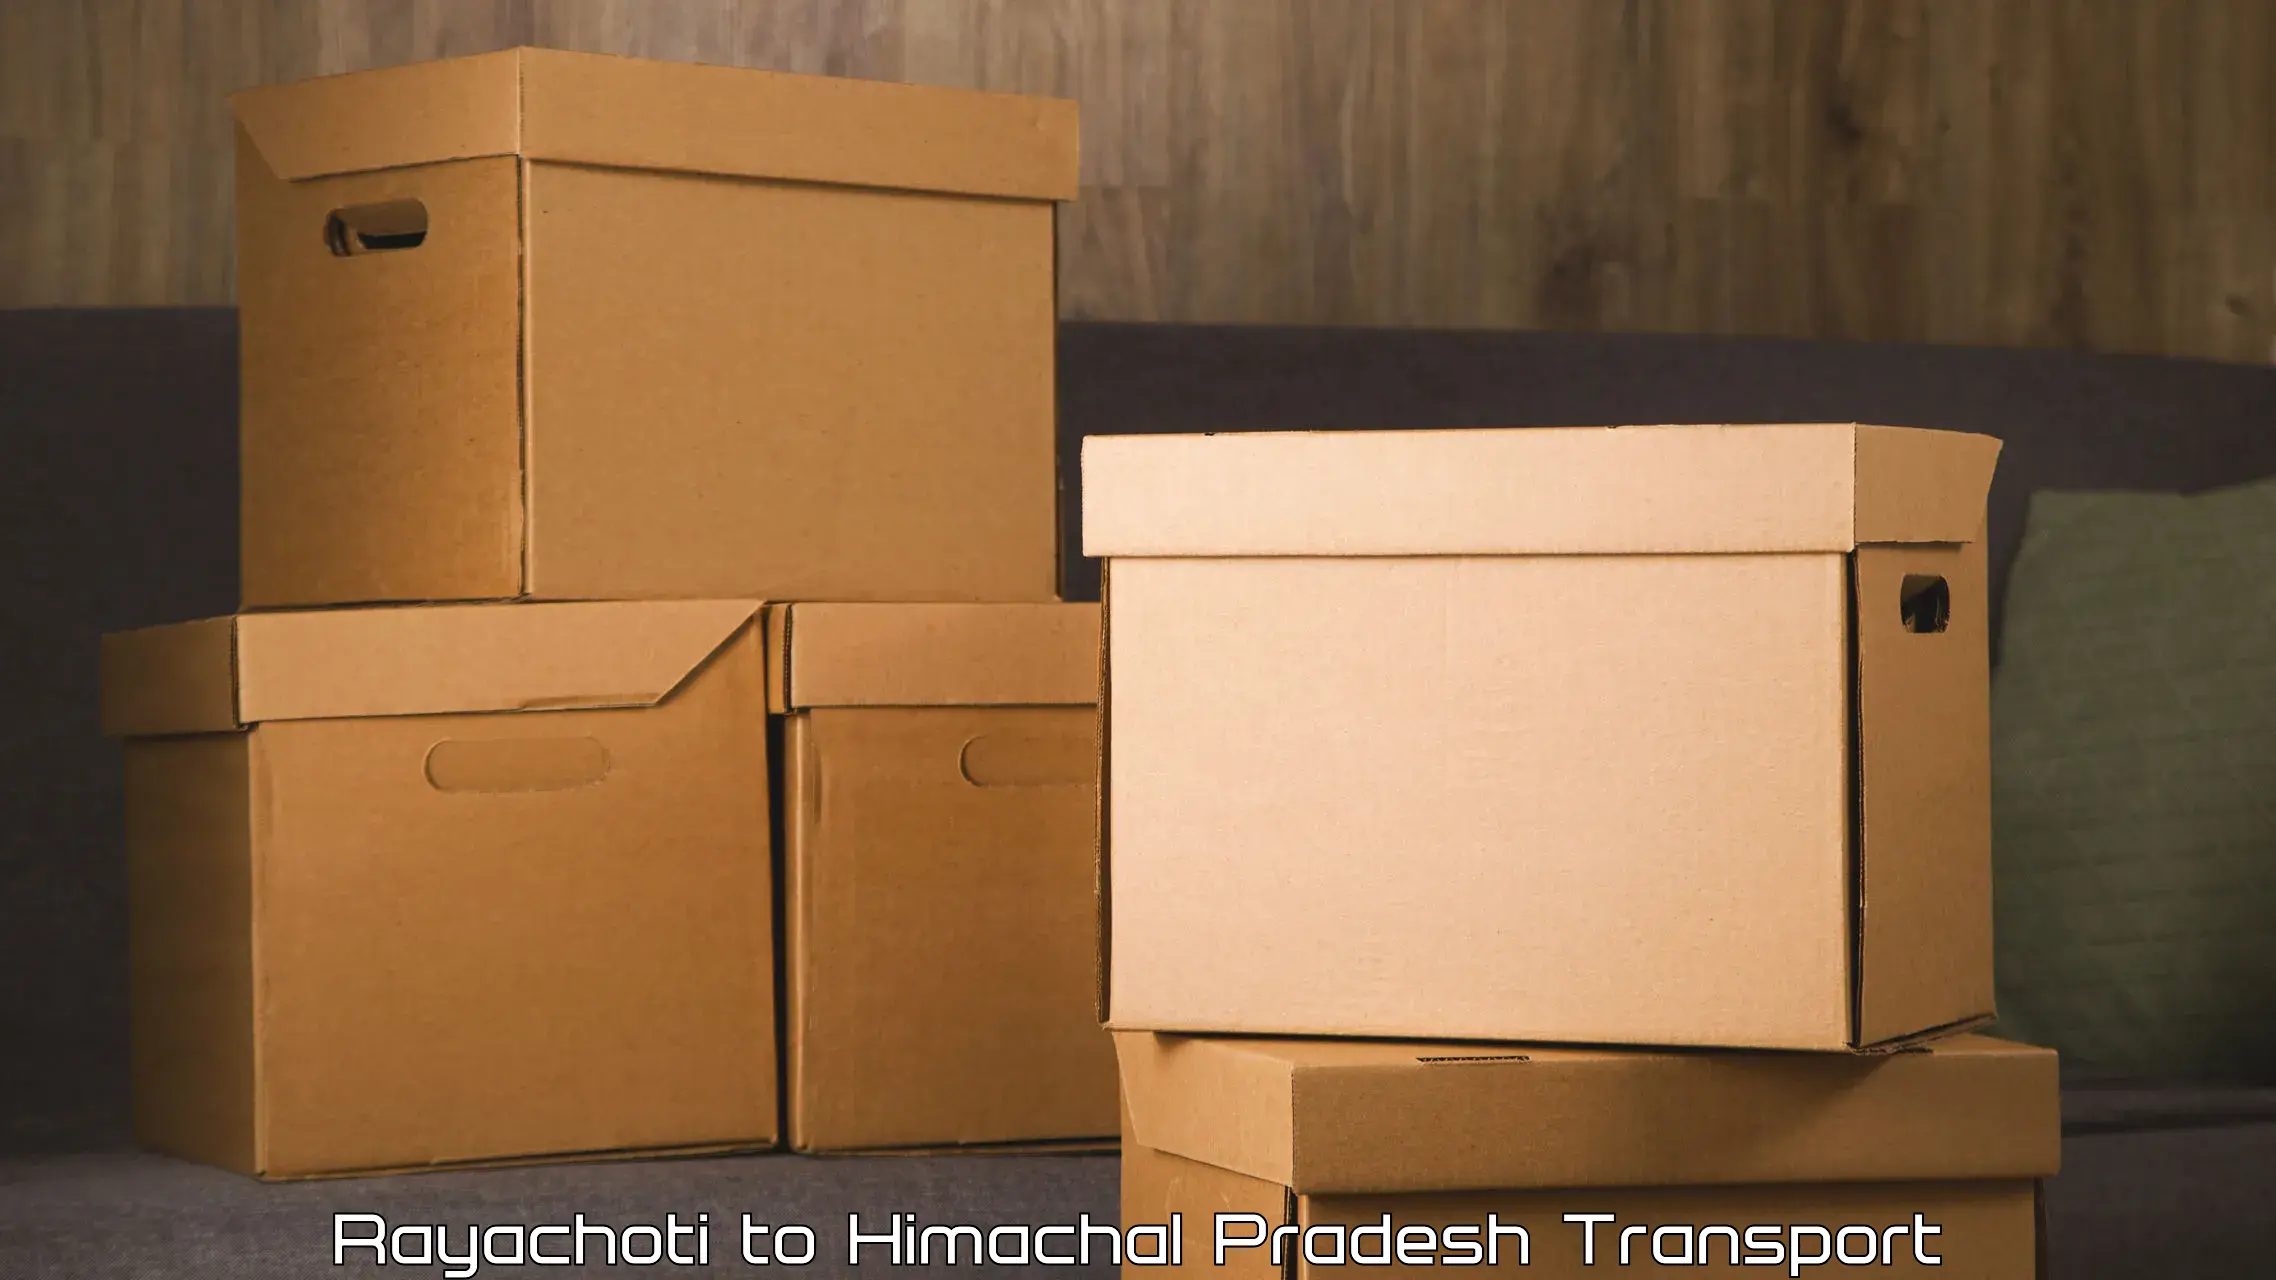 Truck transport companies in India Rayachoti to Himachal Pradesh